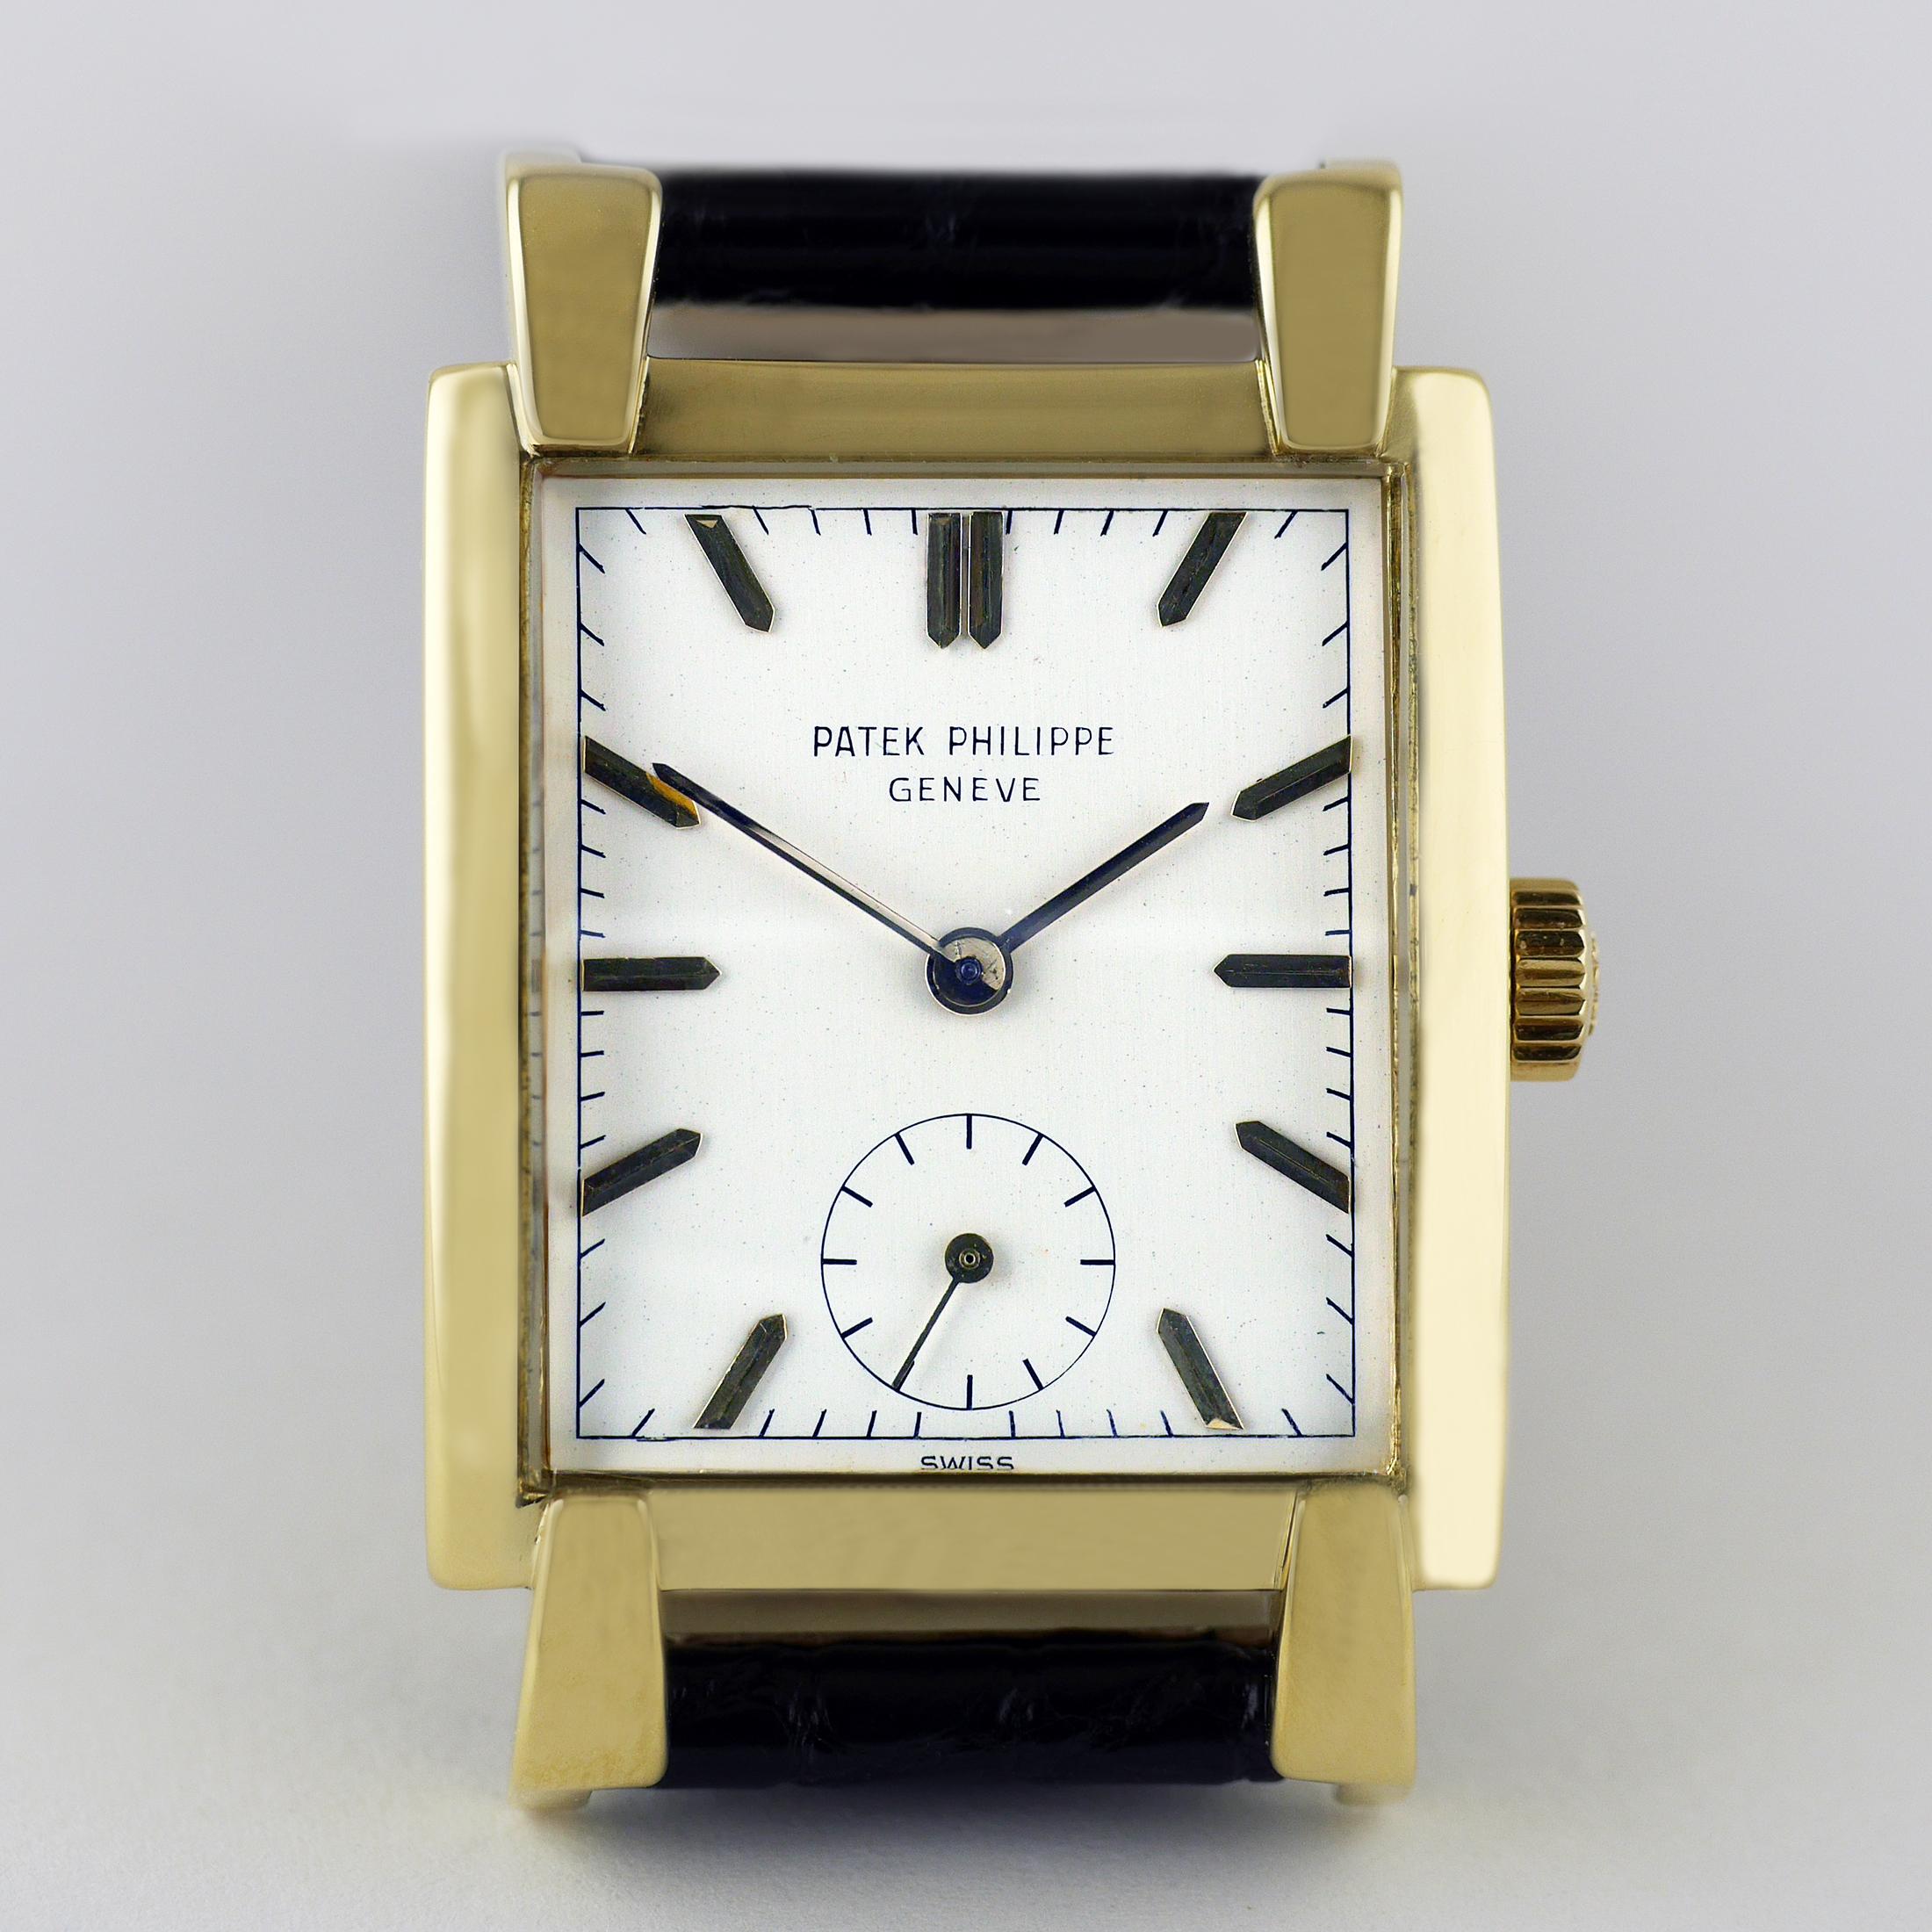 Eine elegante, feine und seltene Vintage-Armbanduhr von Patek Philippe aus dem Jahr 1951.

Das rechteckige 18-Karat-Gehäuse aus Gelbgold mit ungewöhnlich überlagerten, verkehrten und konisch zulaufenden Bandanstößen.

Jewelled, 9'''90 Kaliber